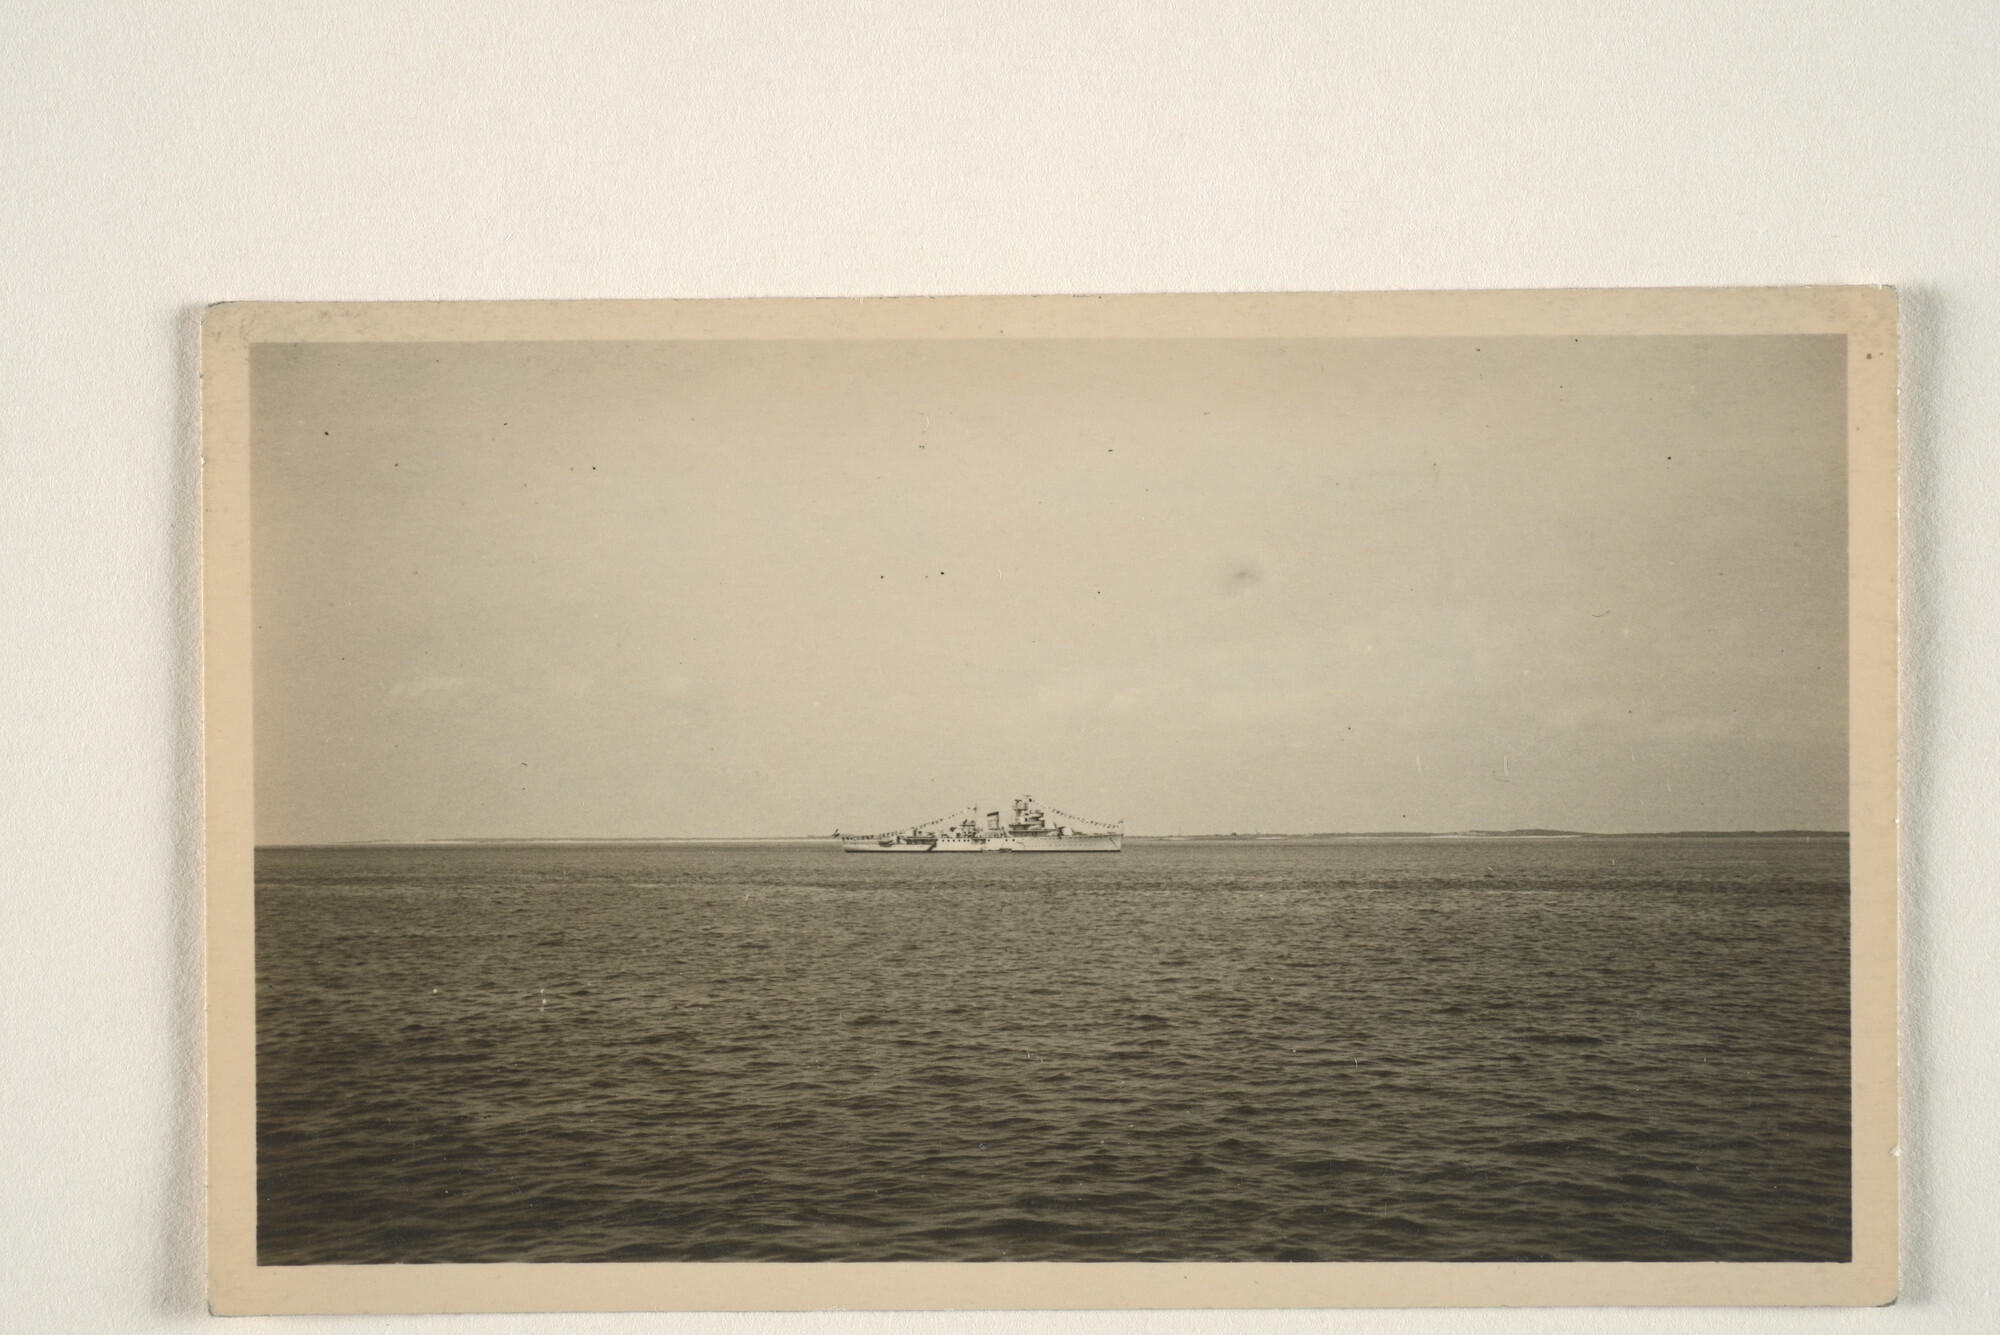 1995.1401; Het artillerie-instructieschip Hr.Ms. 'Van Kinsbergen' ligt voor anker op de Waddenzee, op de achtergrond is de kustlijn van Texel te zien; foto